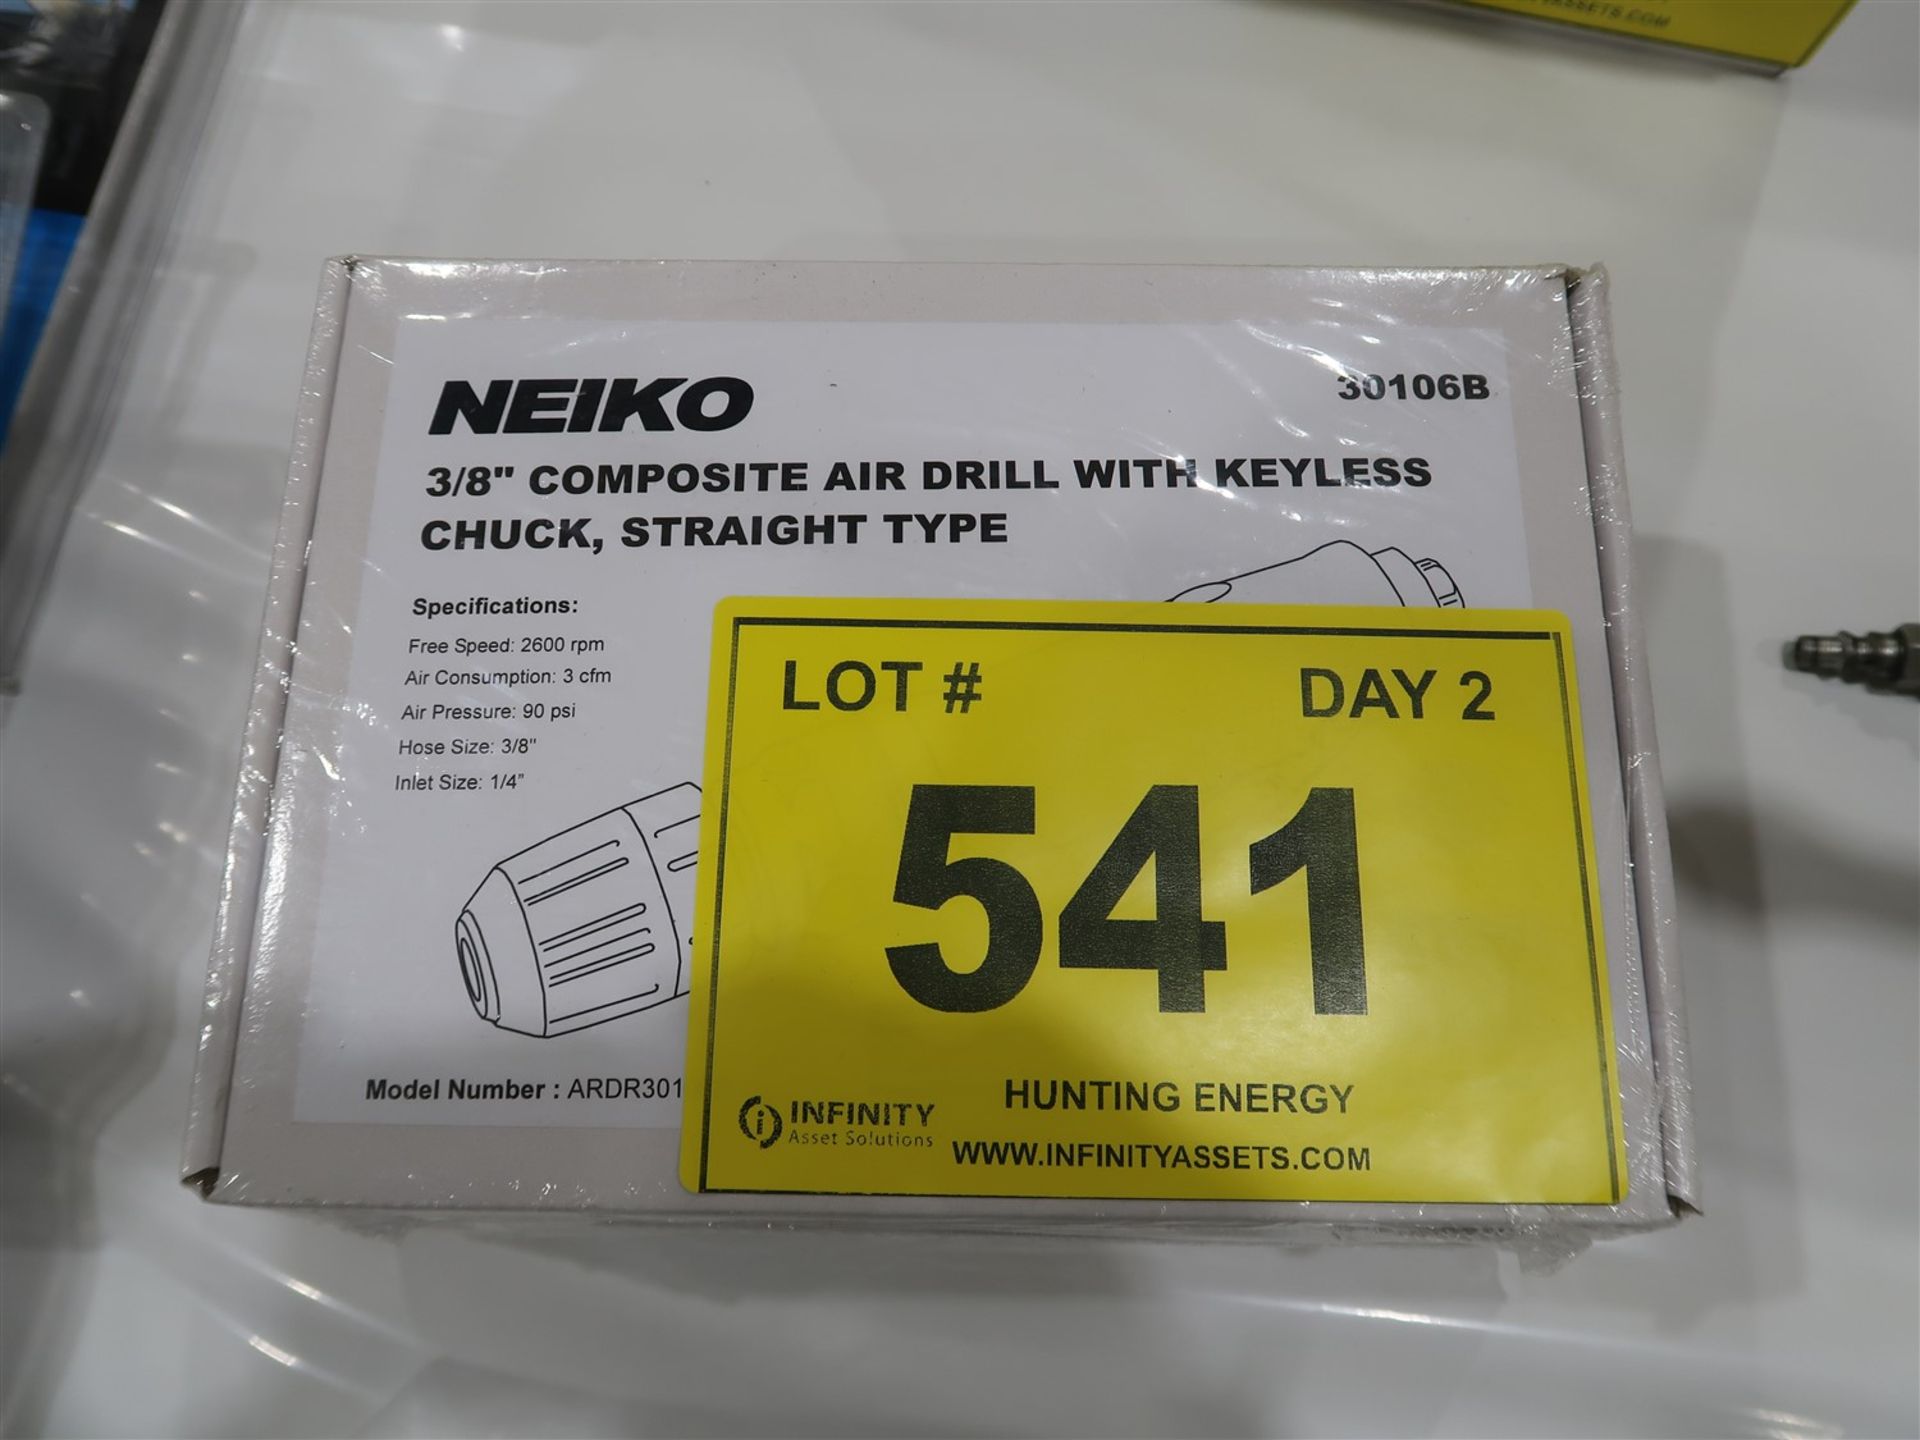 (NEW) NEIKO 3/8 IN. COMPOSITE AIR DRILL